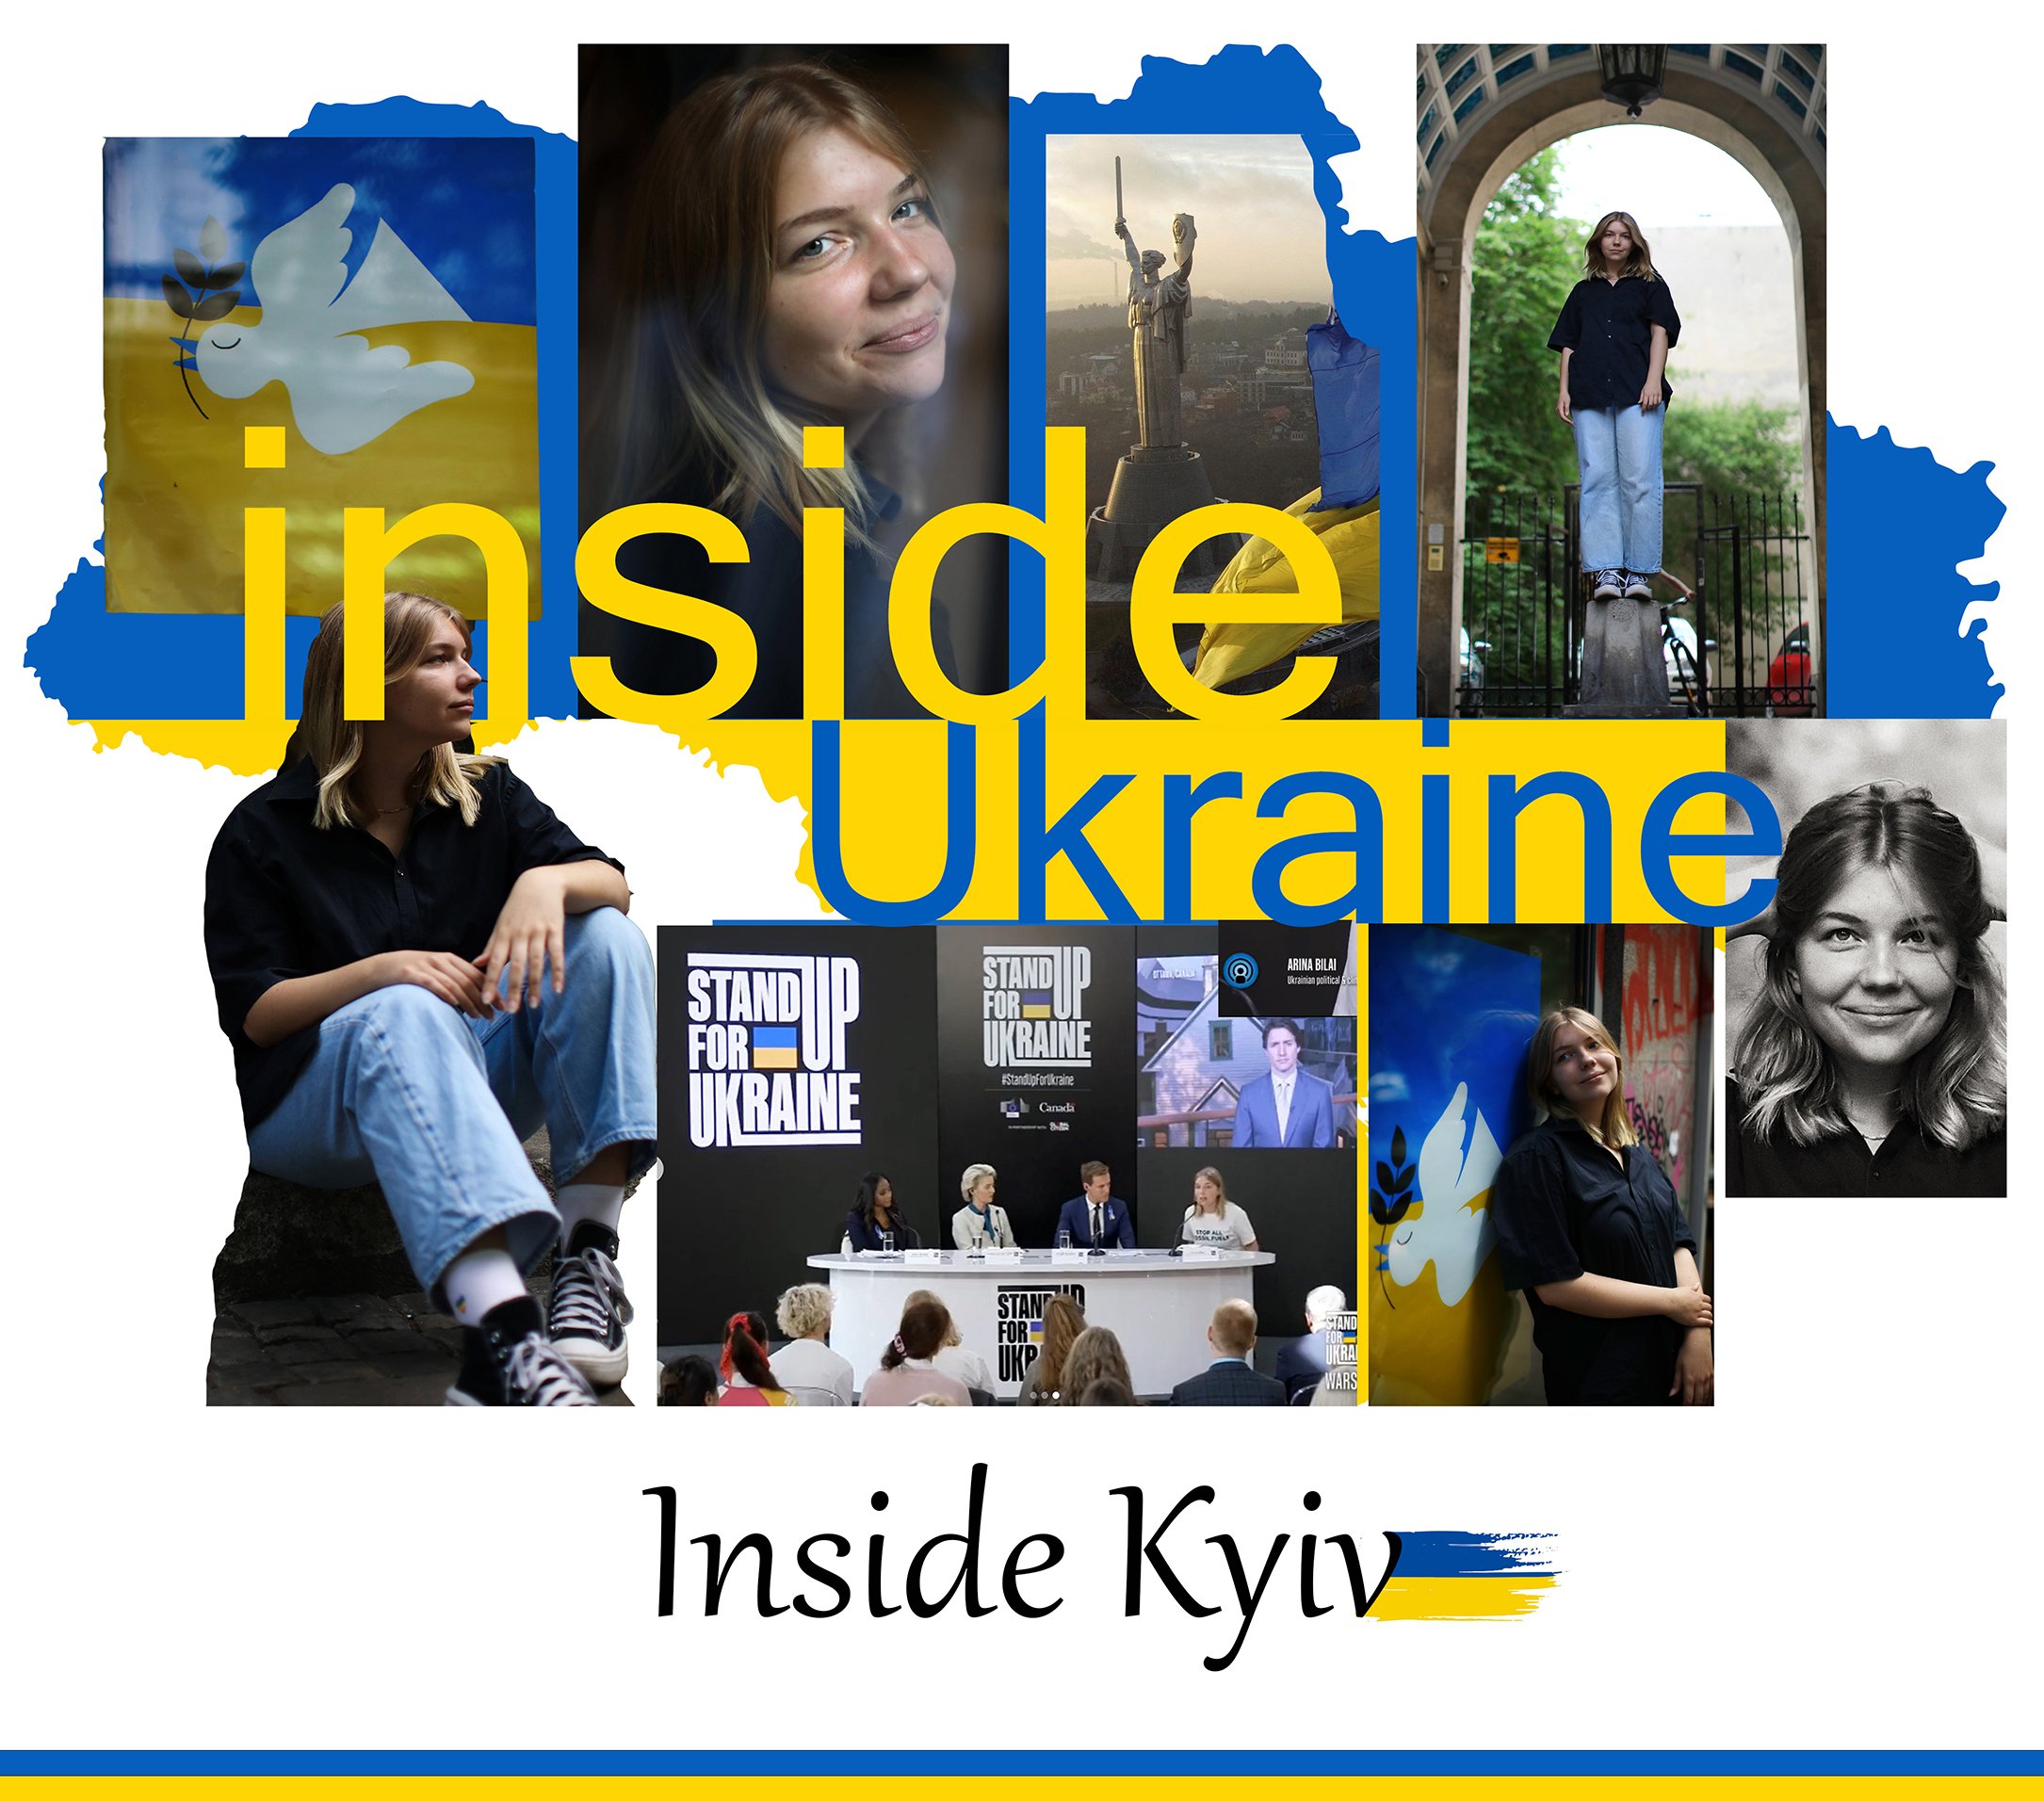 Arina - Activist, High School Student, Ukraine's&nbsp;Future,&nbsp;Kyiv